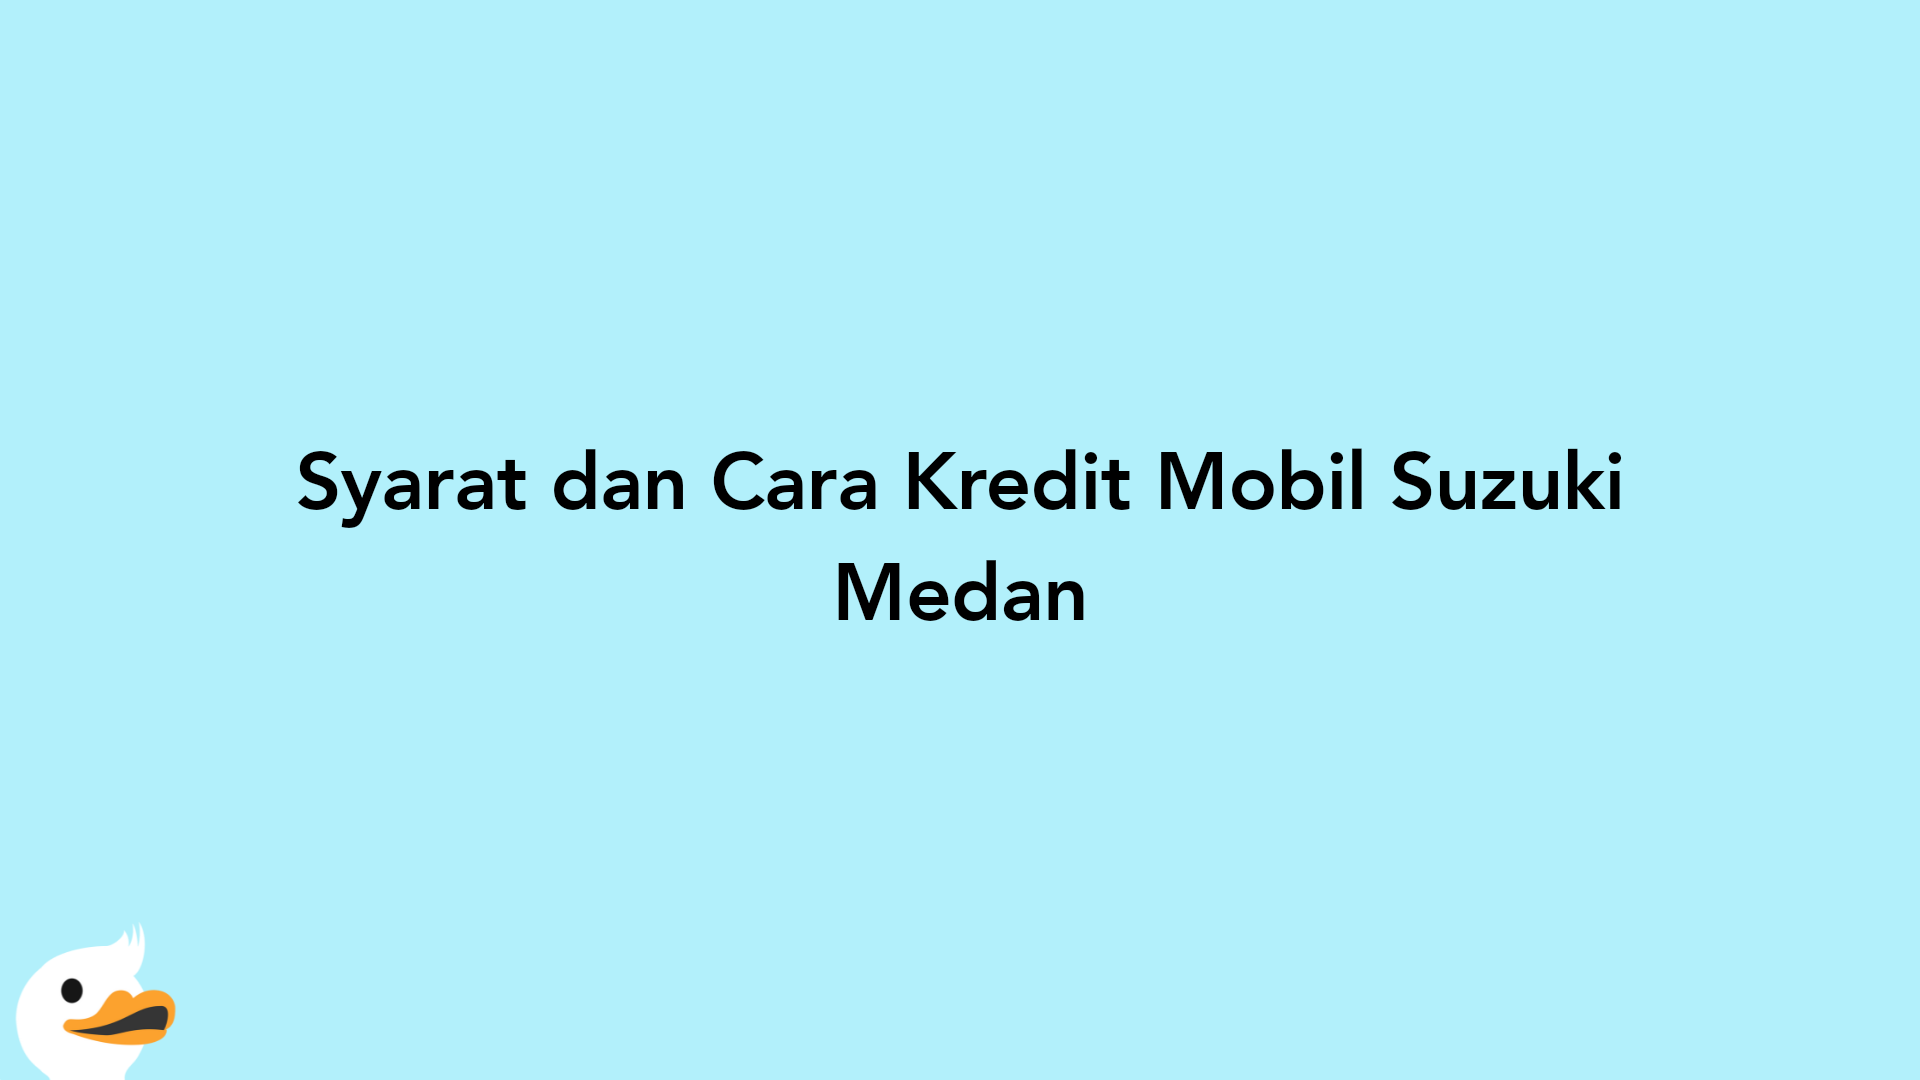 Syarat dan Cara Kredit Mobil Suzuki Medan